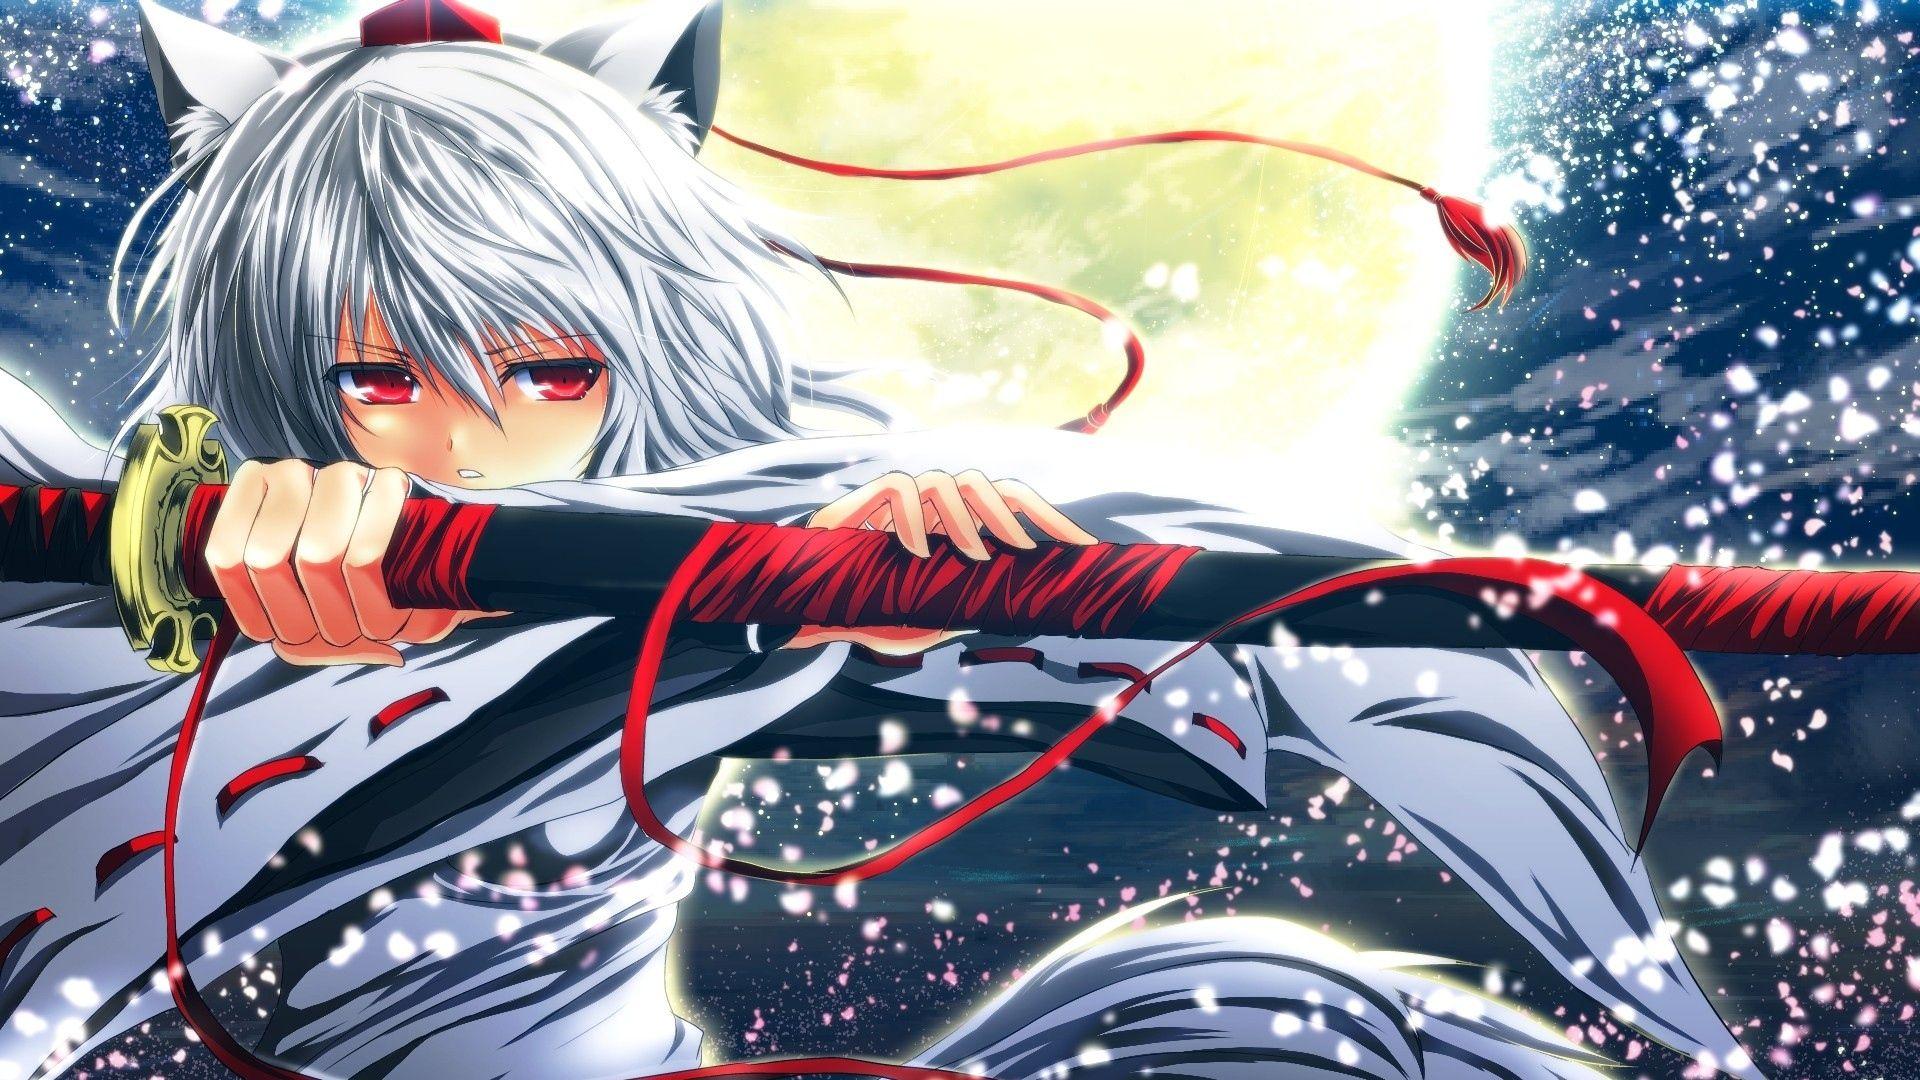 Anime Girl Sword Wallpaper gambar ke 8